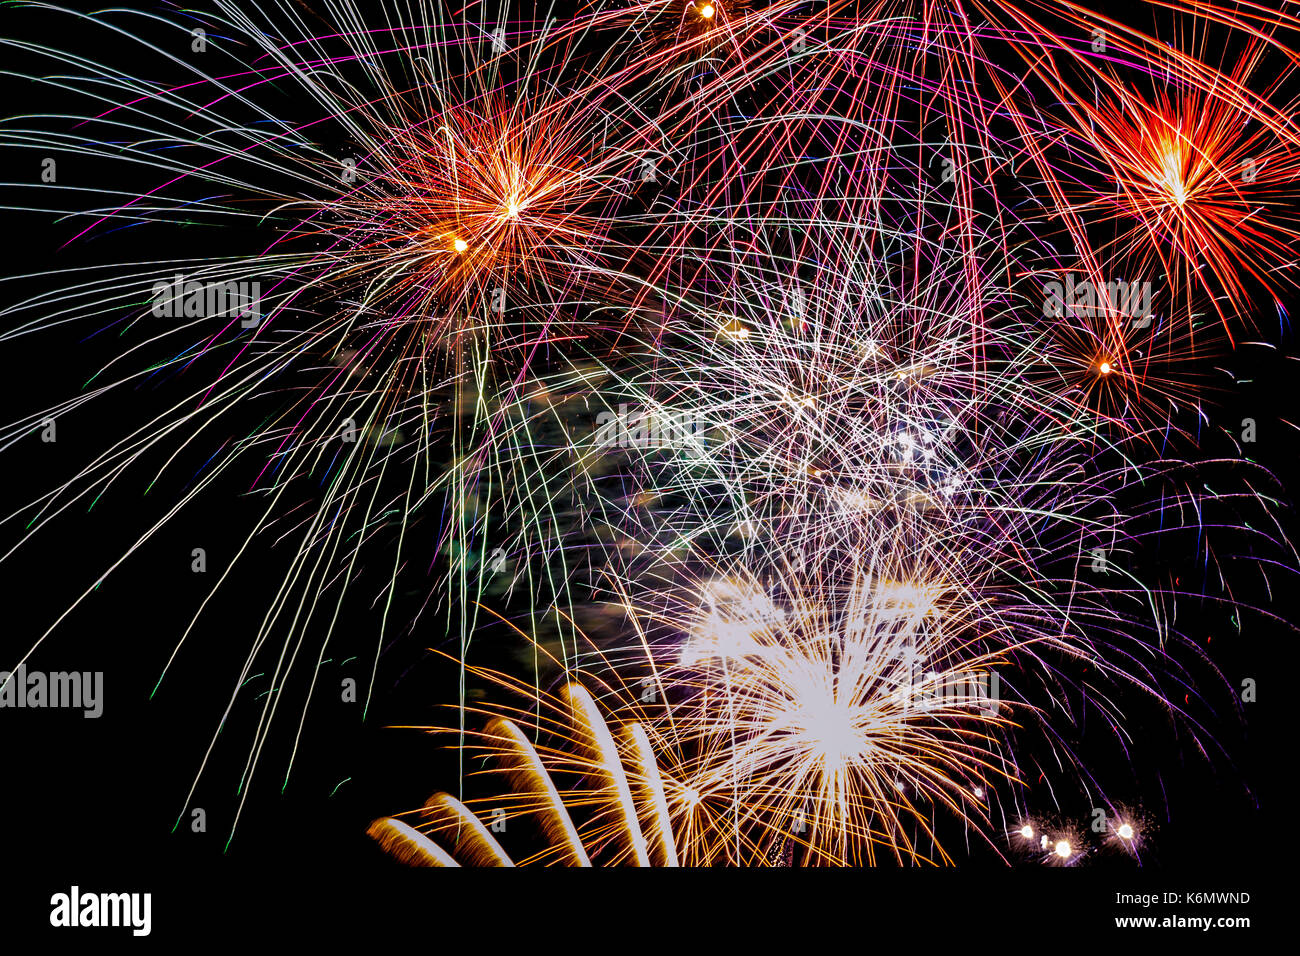 Notte spettacolare con fuochi d'artificio colorati per celebrare l'arrivo del nuovo anno Foto Stock